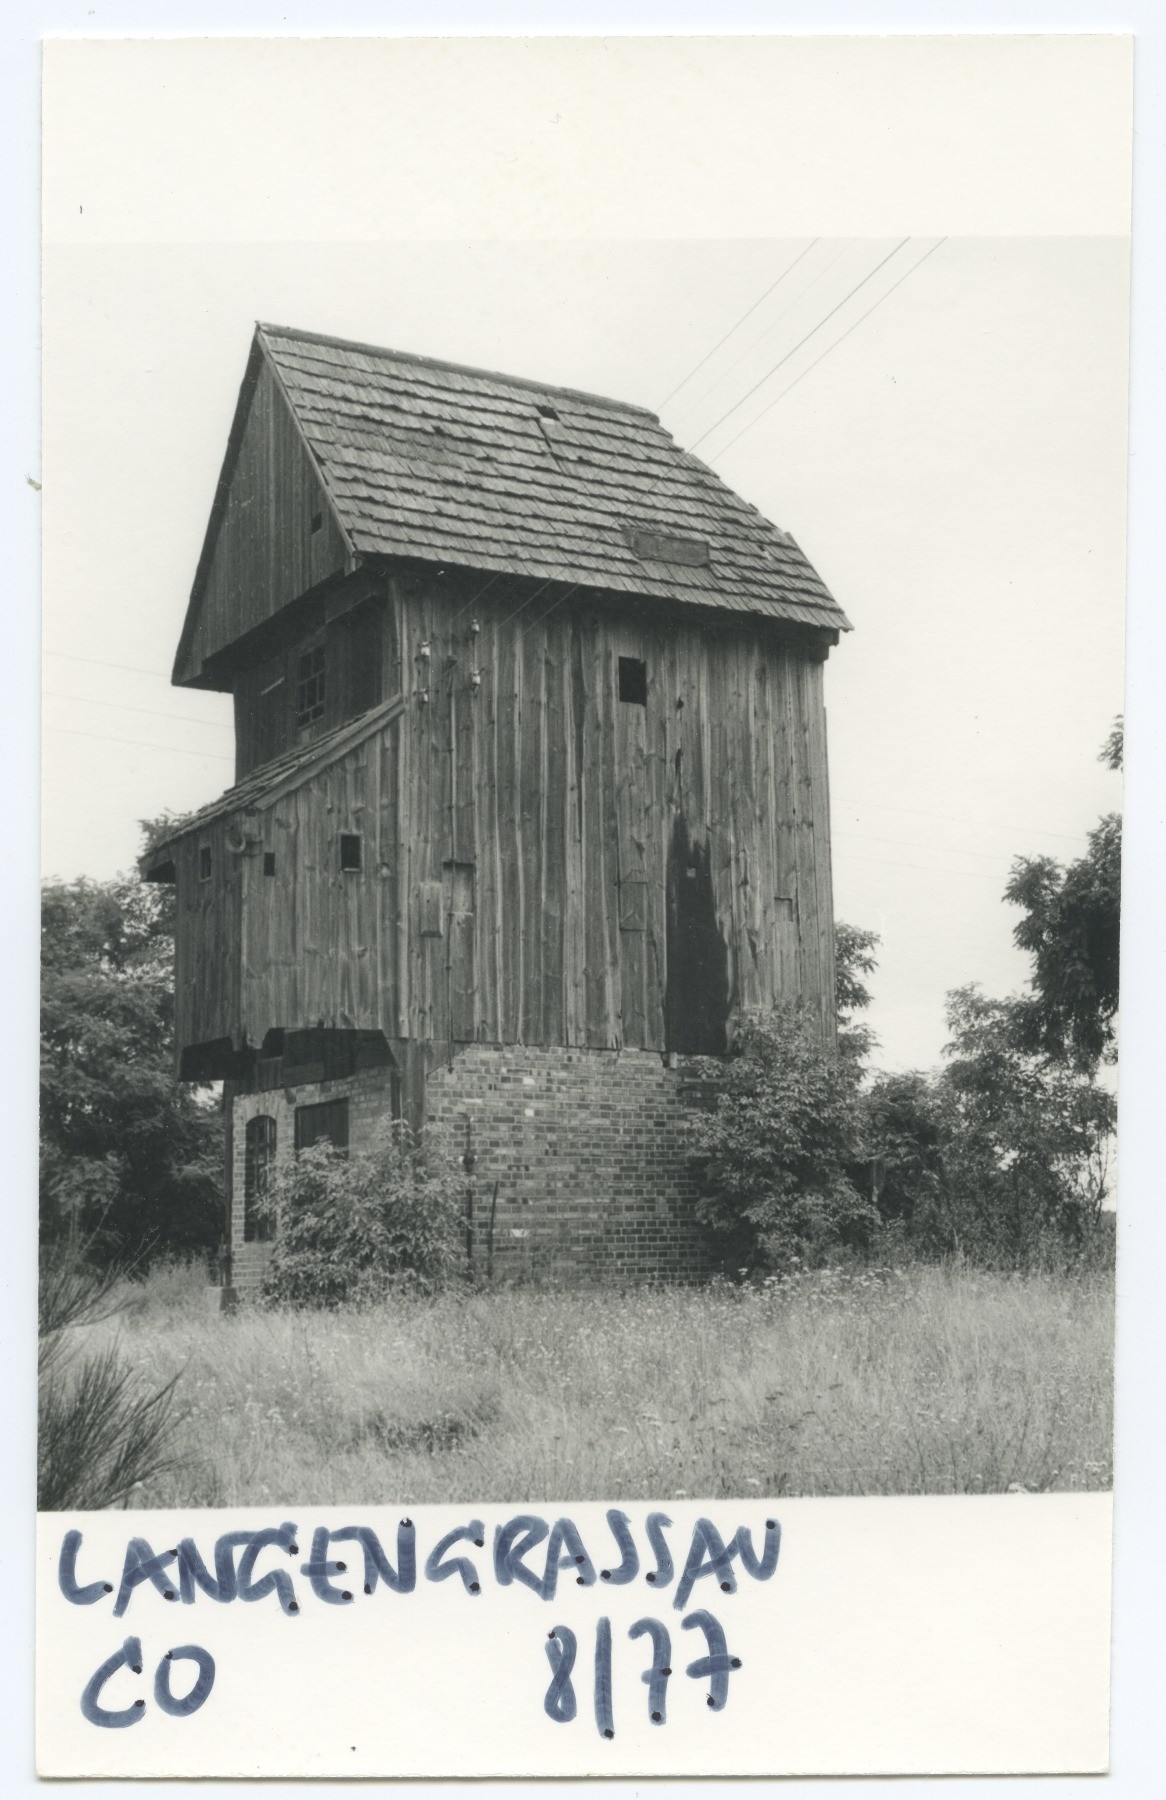 Bockwindmühle Langengrassau (Historische Mühle von Sanssouci CC BY-NC-ND)